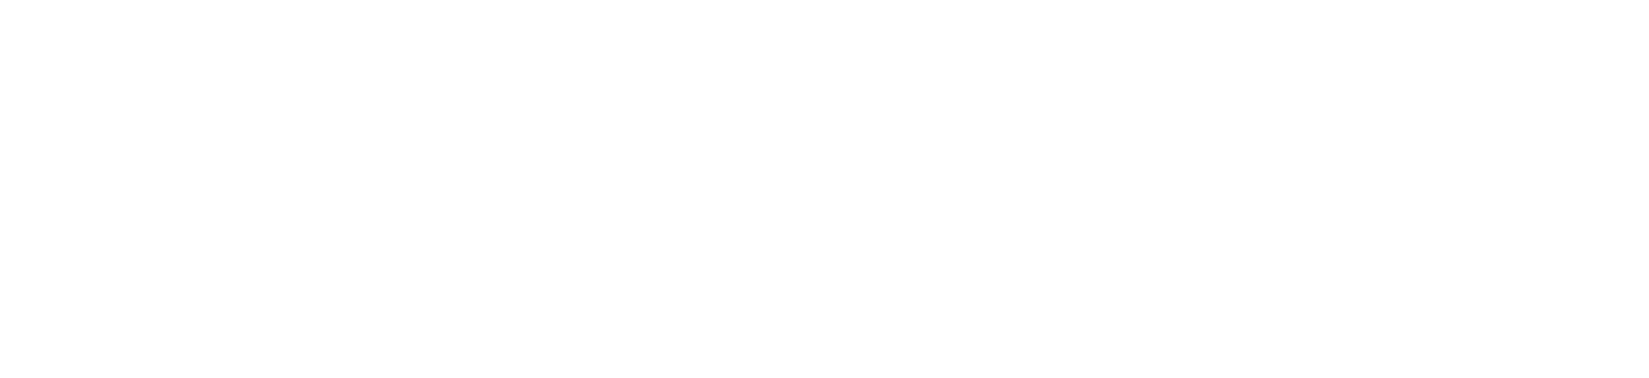 Boeing Logo groß für dunkle Hintergründe (transparentes PNG)